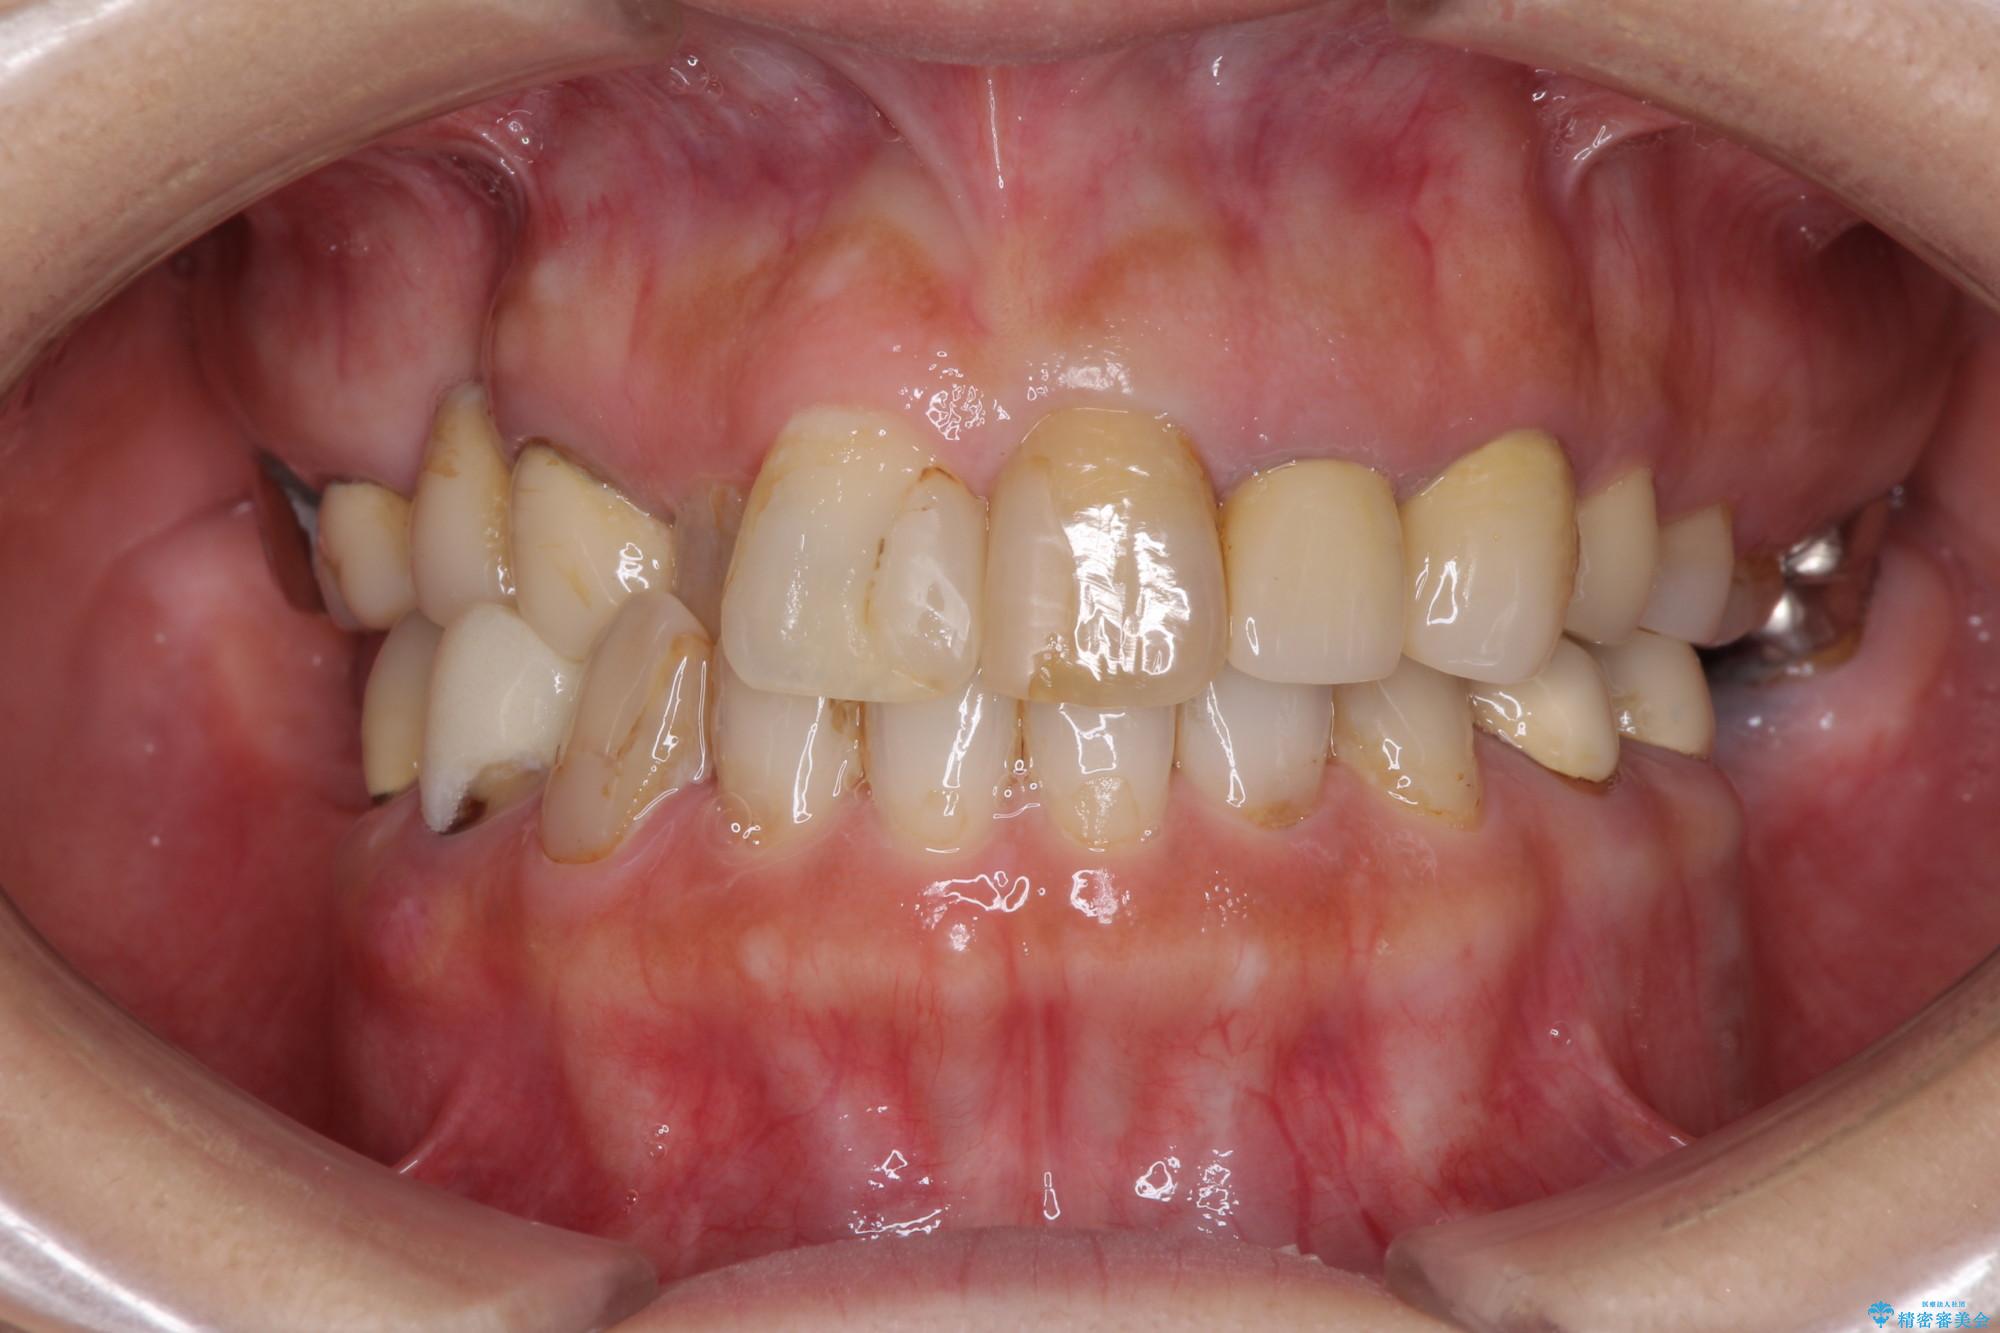 歯列矯正とセラミックで美しい口元に 治療前